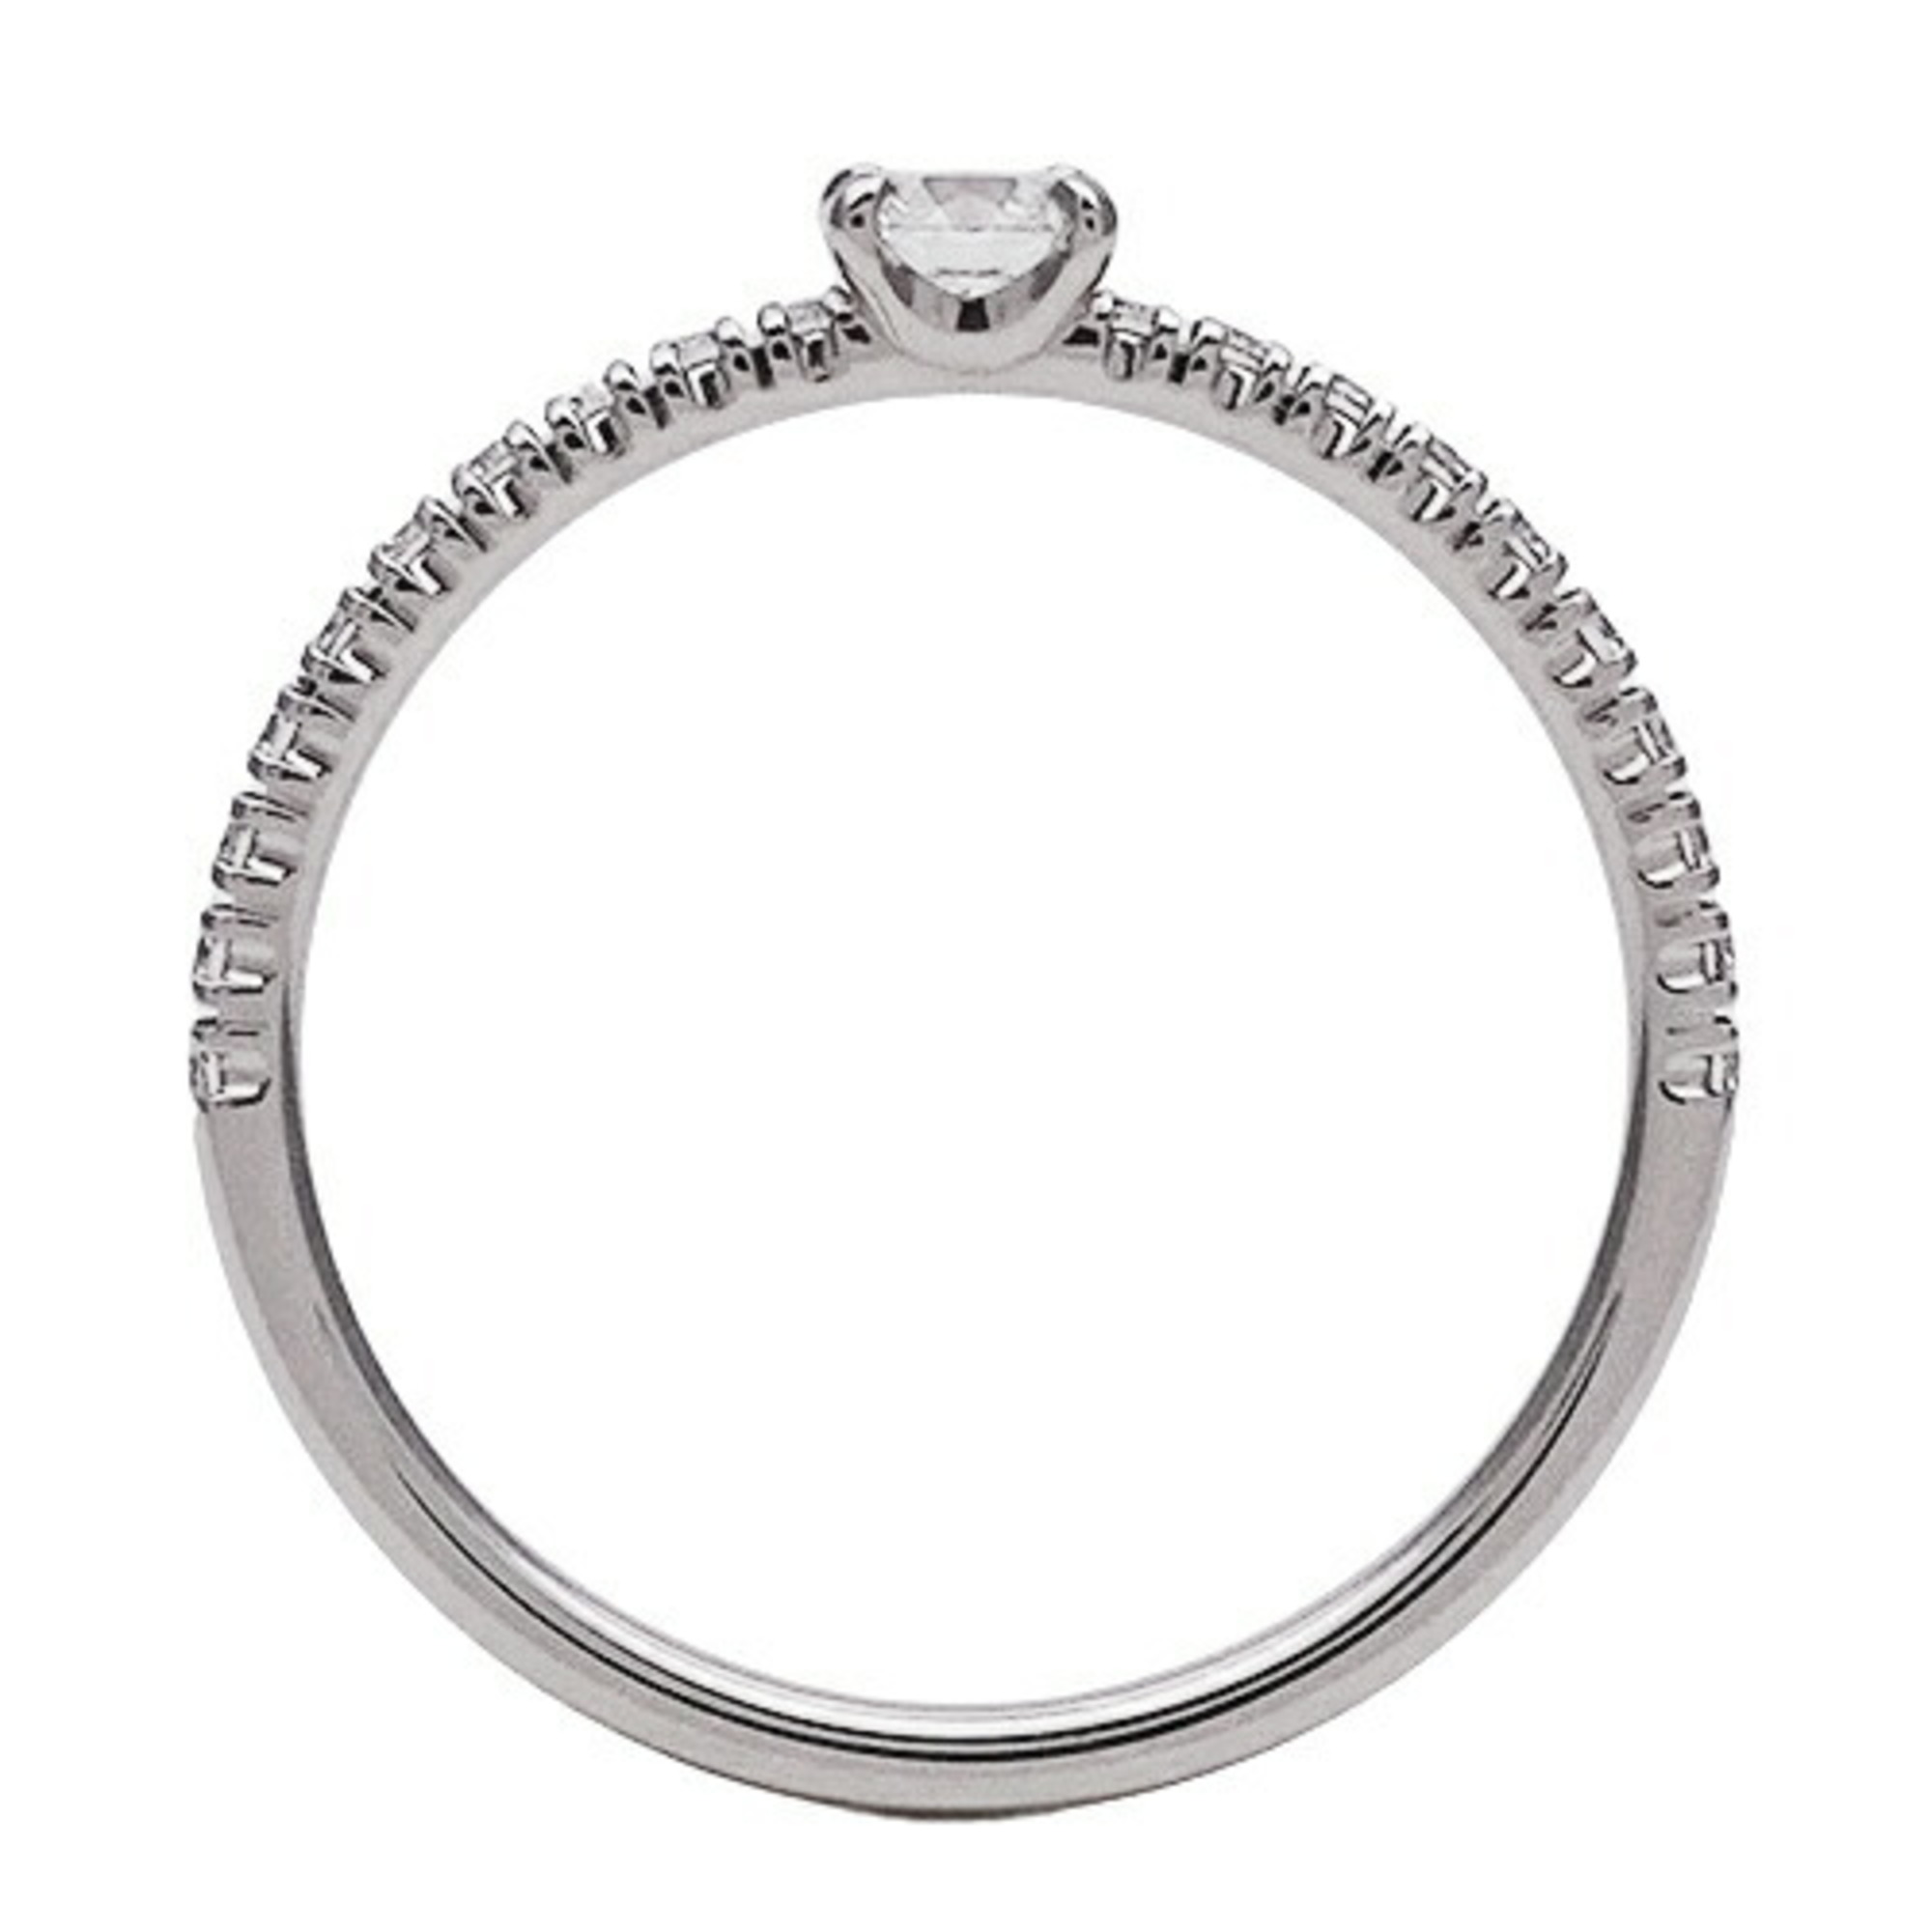 Cartier ring for women, diamond, PT950 platinum, Etincel de solitaire ring, #50, size 10, polished